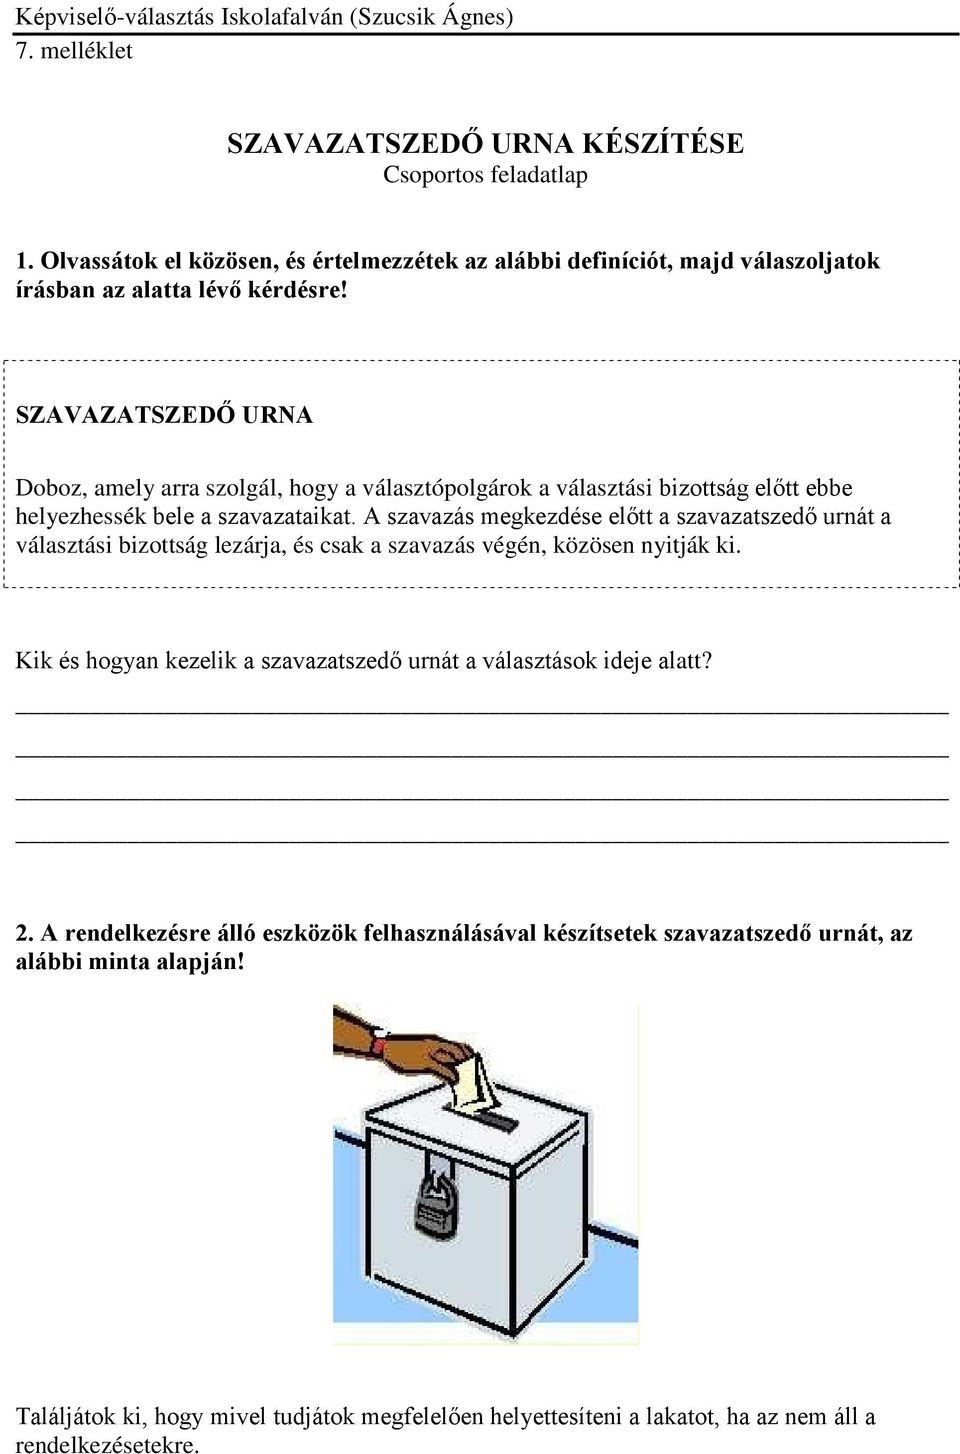 A szavazás megkezdése előtt a szavazatszedő urnát a választási bizottság lezárja, és csak a szavazás végén, közösen nyitják ki.